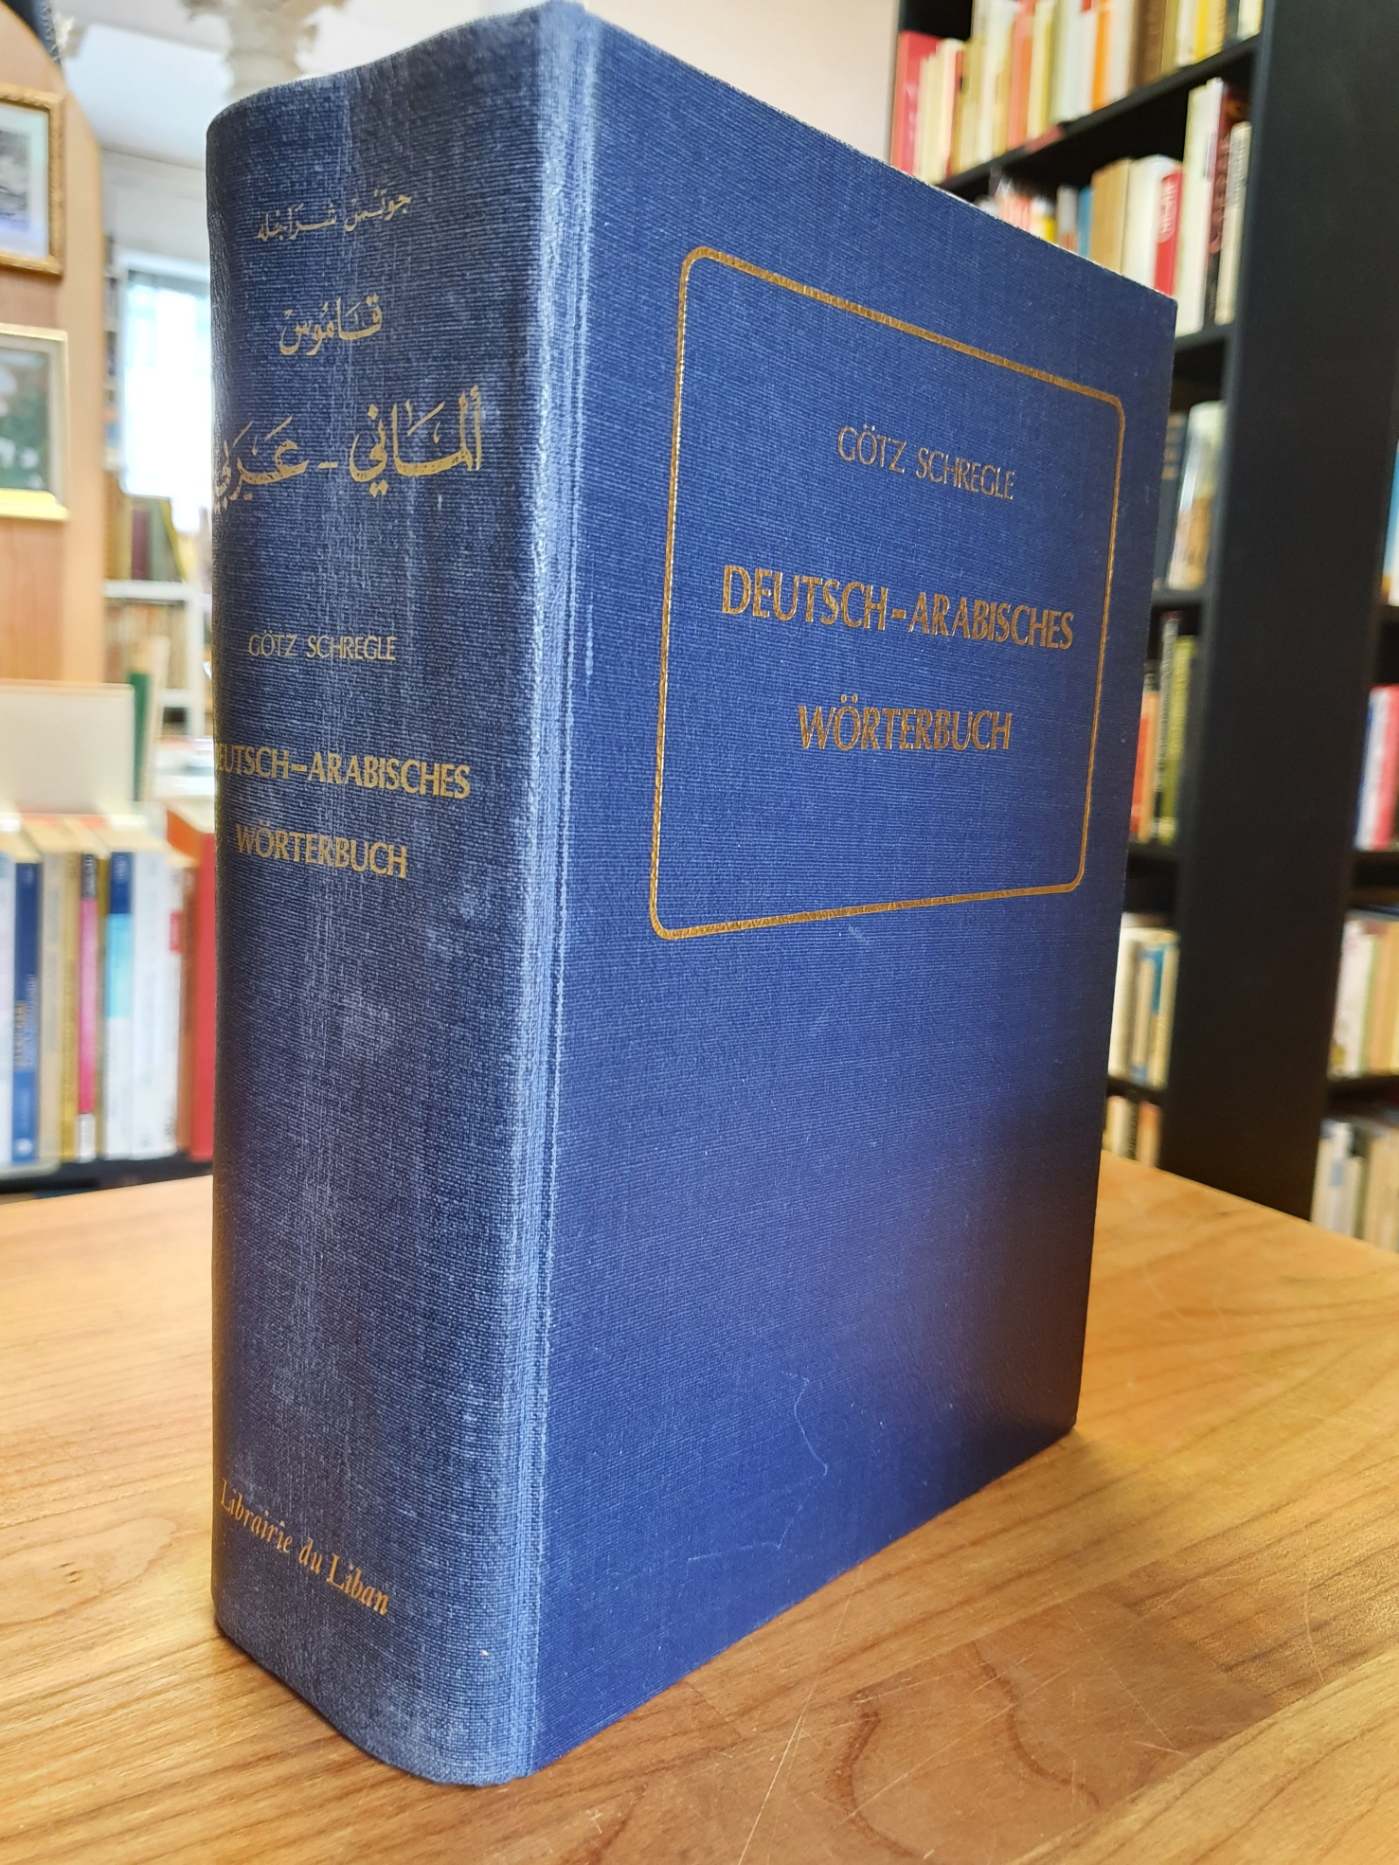 Arabisch / Schregle, Deutsch-arabisches Wörterbuch,